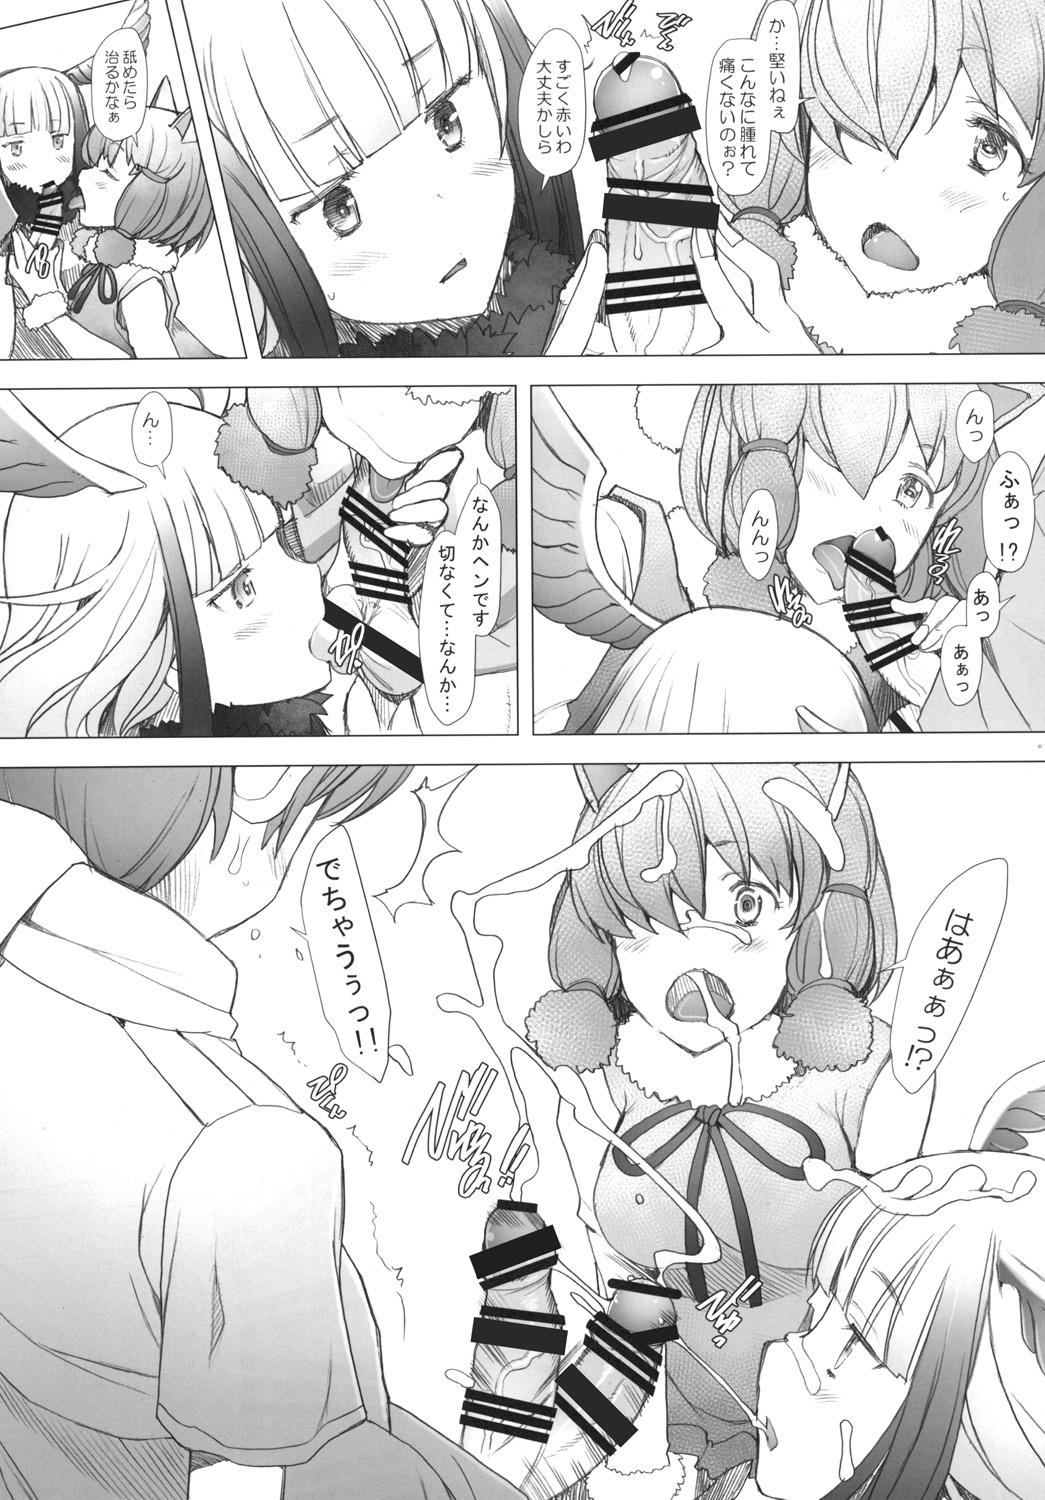 Piercing Kimi to Arutoki - Kemono friends Selfie - Page 7